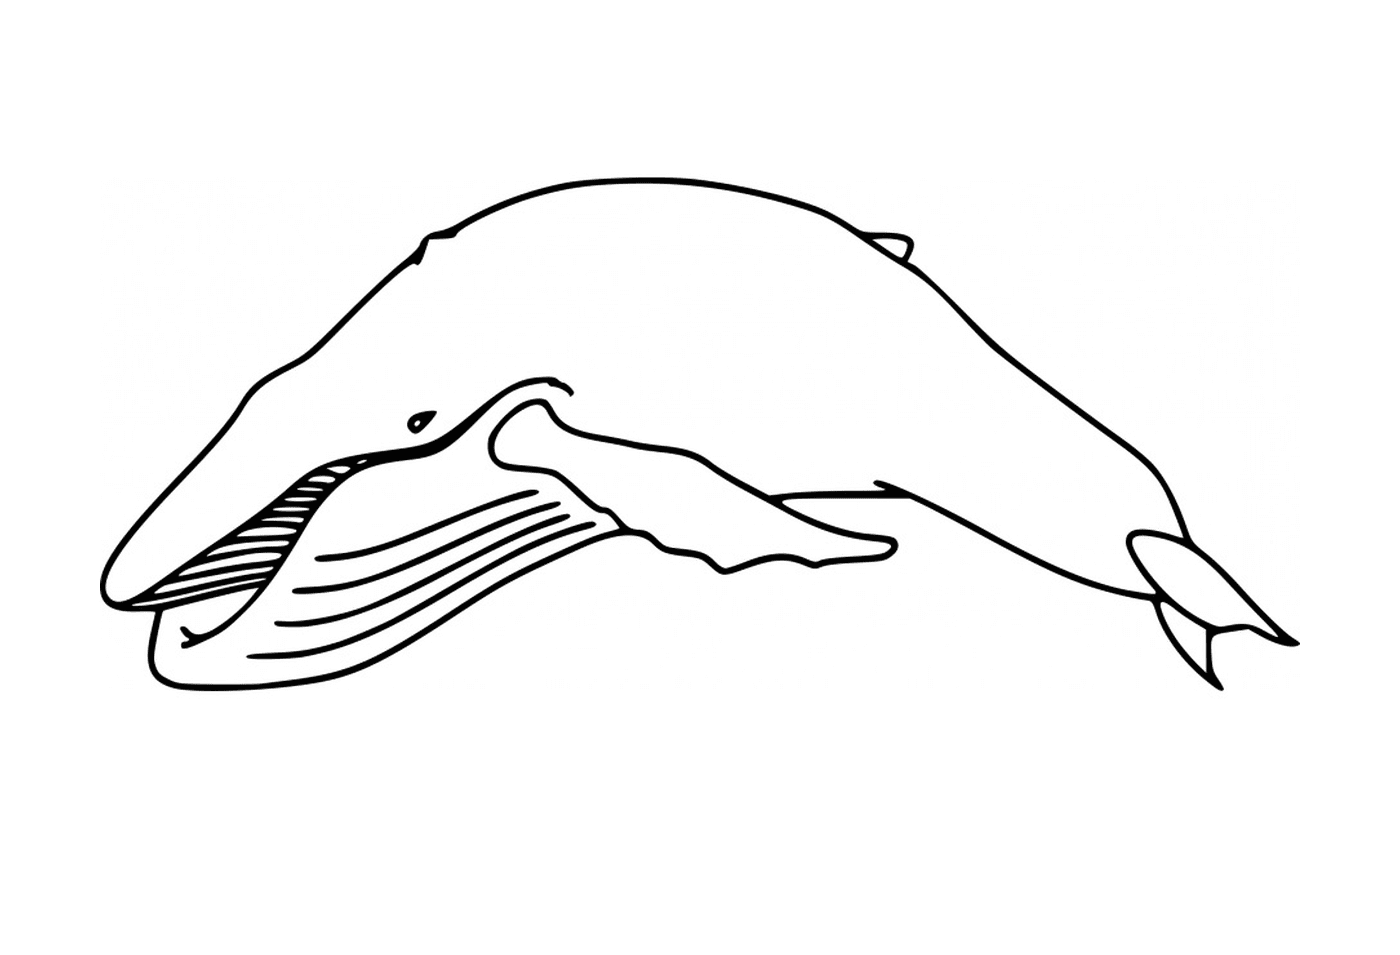  a 海豚 